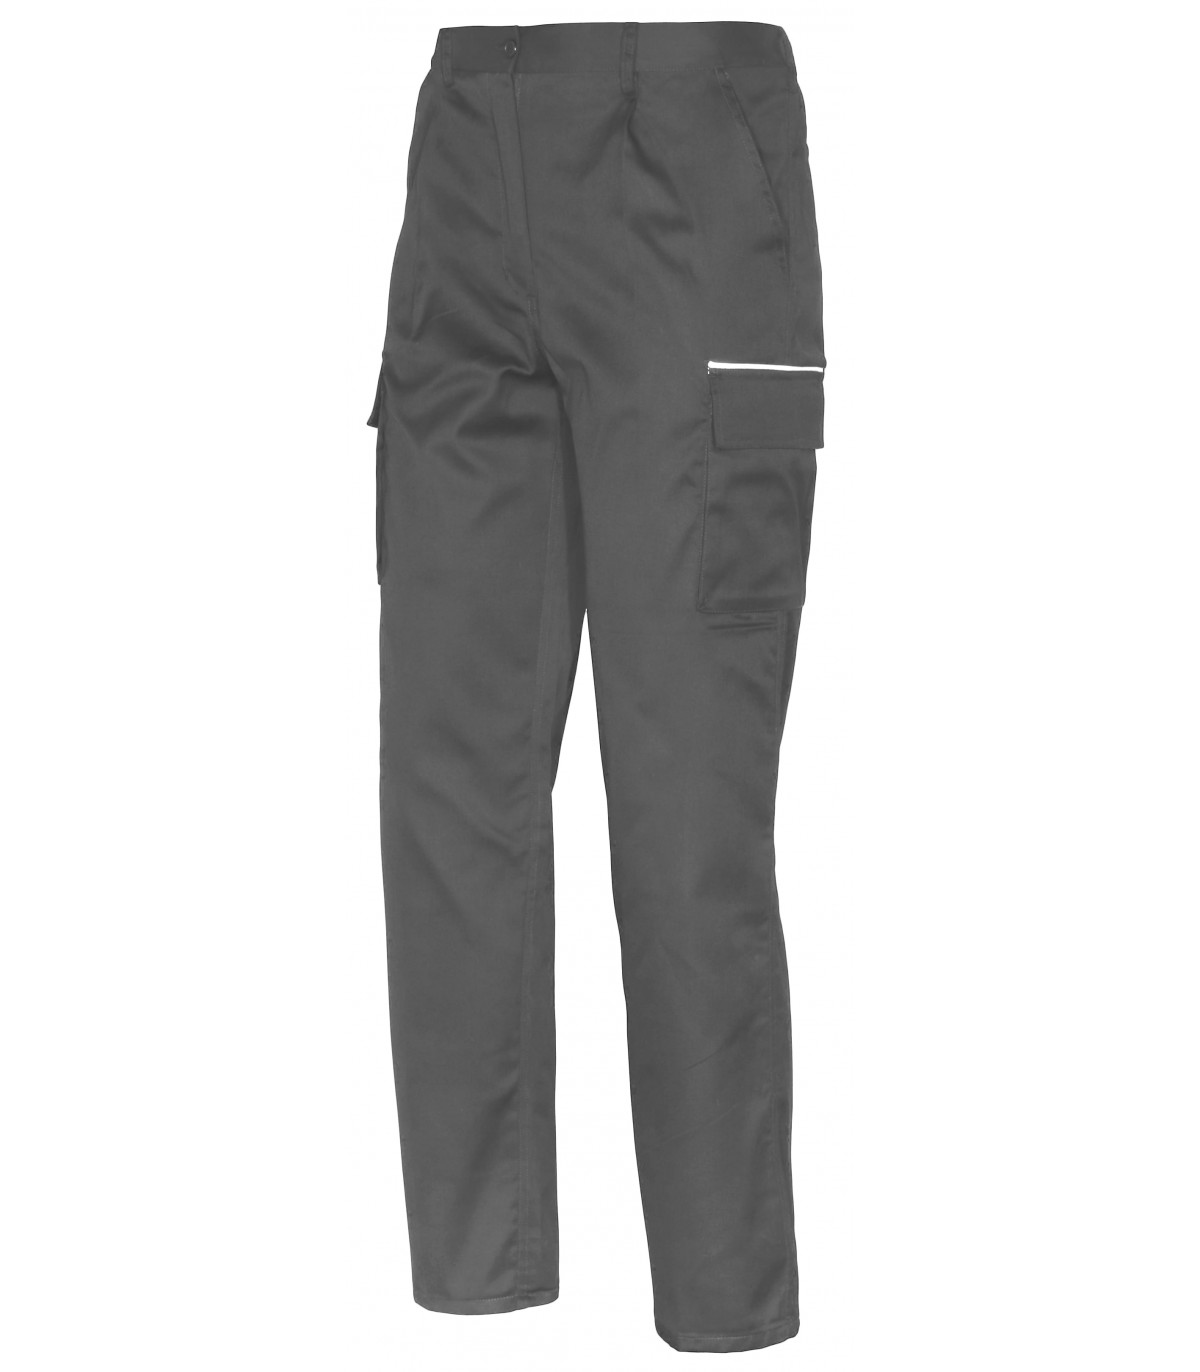 Pantalón hombre de trabajo básico en gris Multibolsillos NPT